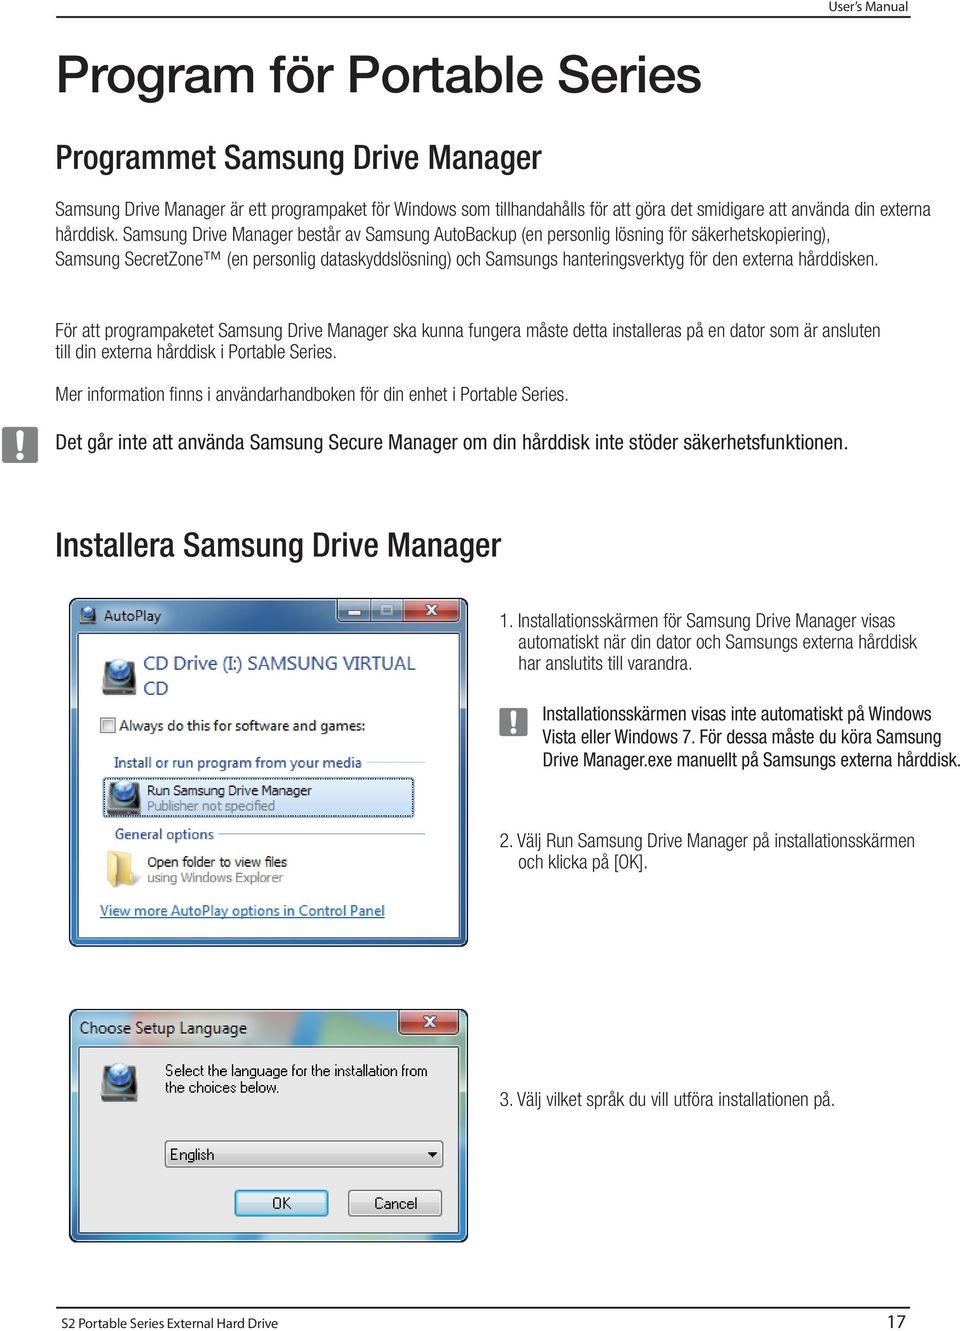 Samsung Drive Manager består av Samsung AutoBackup (en personlig lösning för säkerhetskopiering), Samsung SecretZone (en personlig dataskyddslösning) och Samsungs hanteringsverktyg för den externa